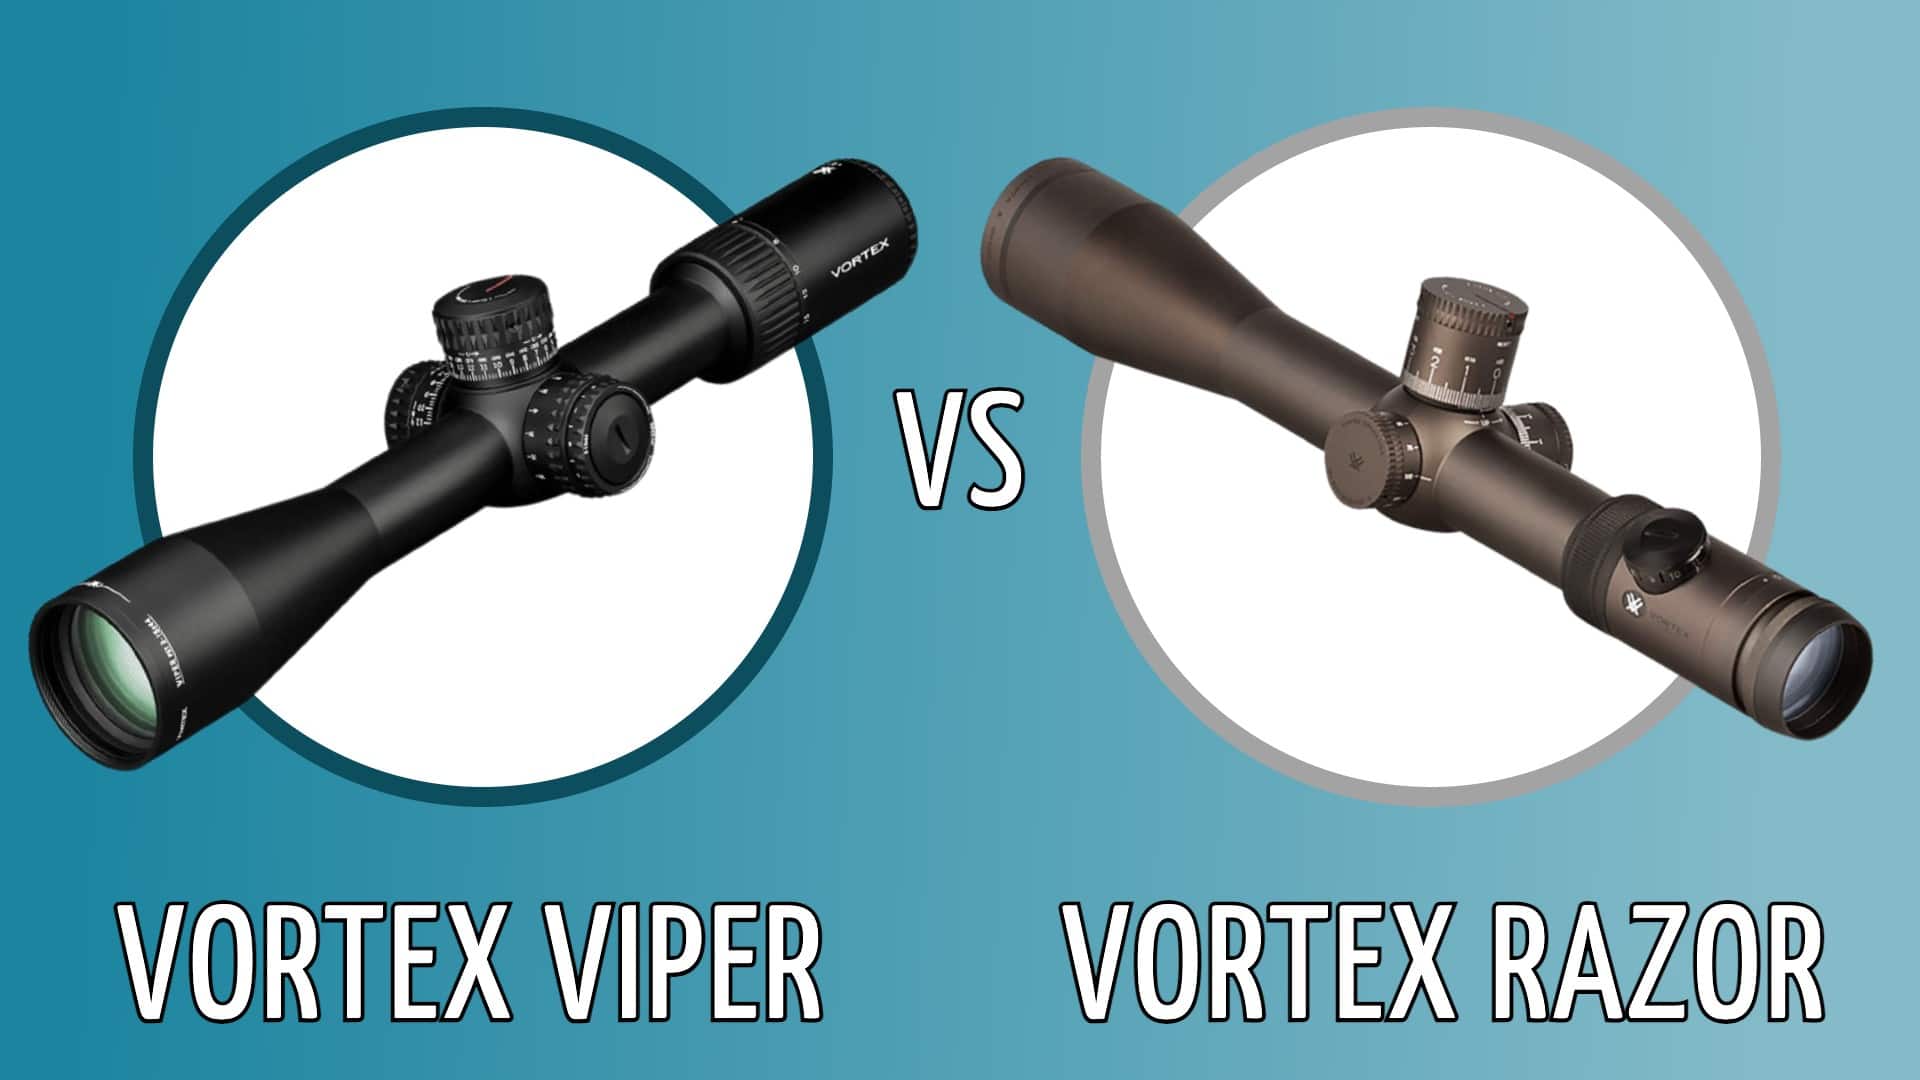 Vortex viper vs vortex razor